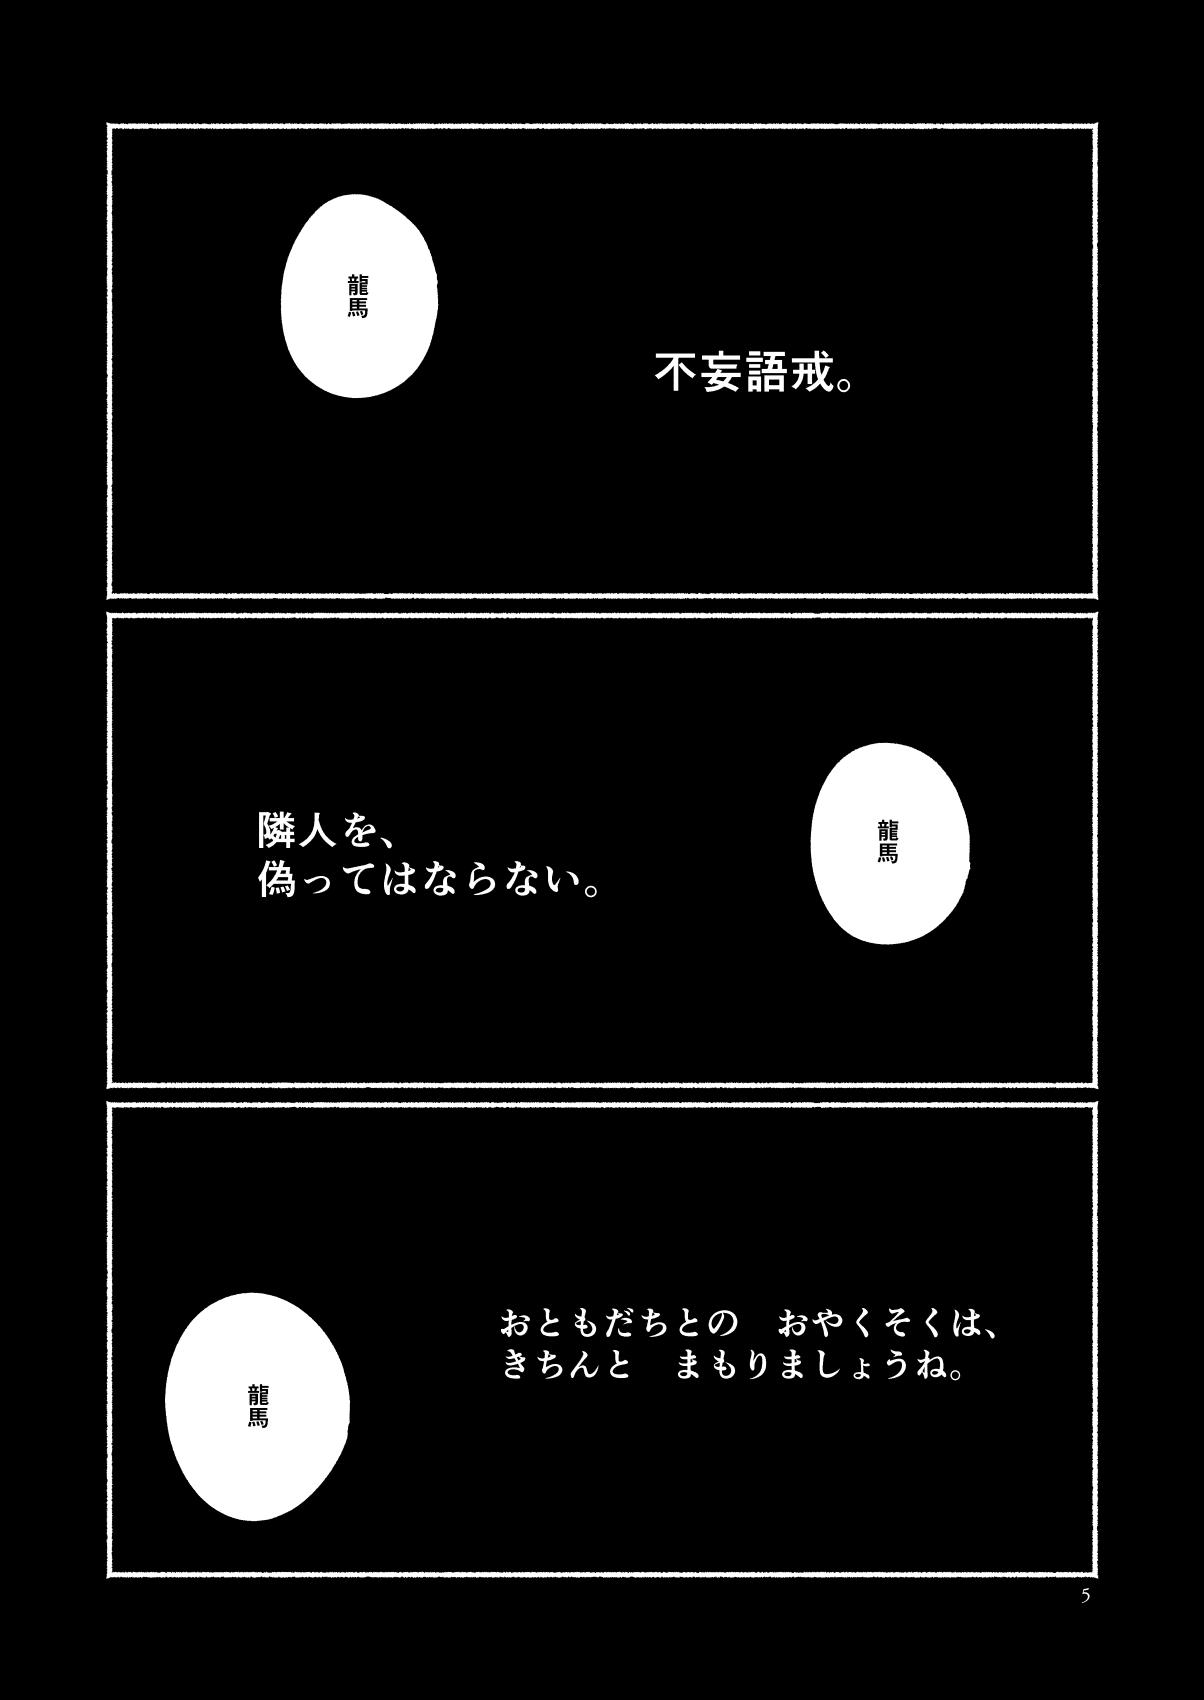 Hoe Chigiri no Yume ni Ame no Furu - Fate grand order Art - Page 5